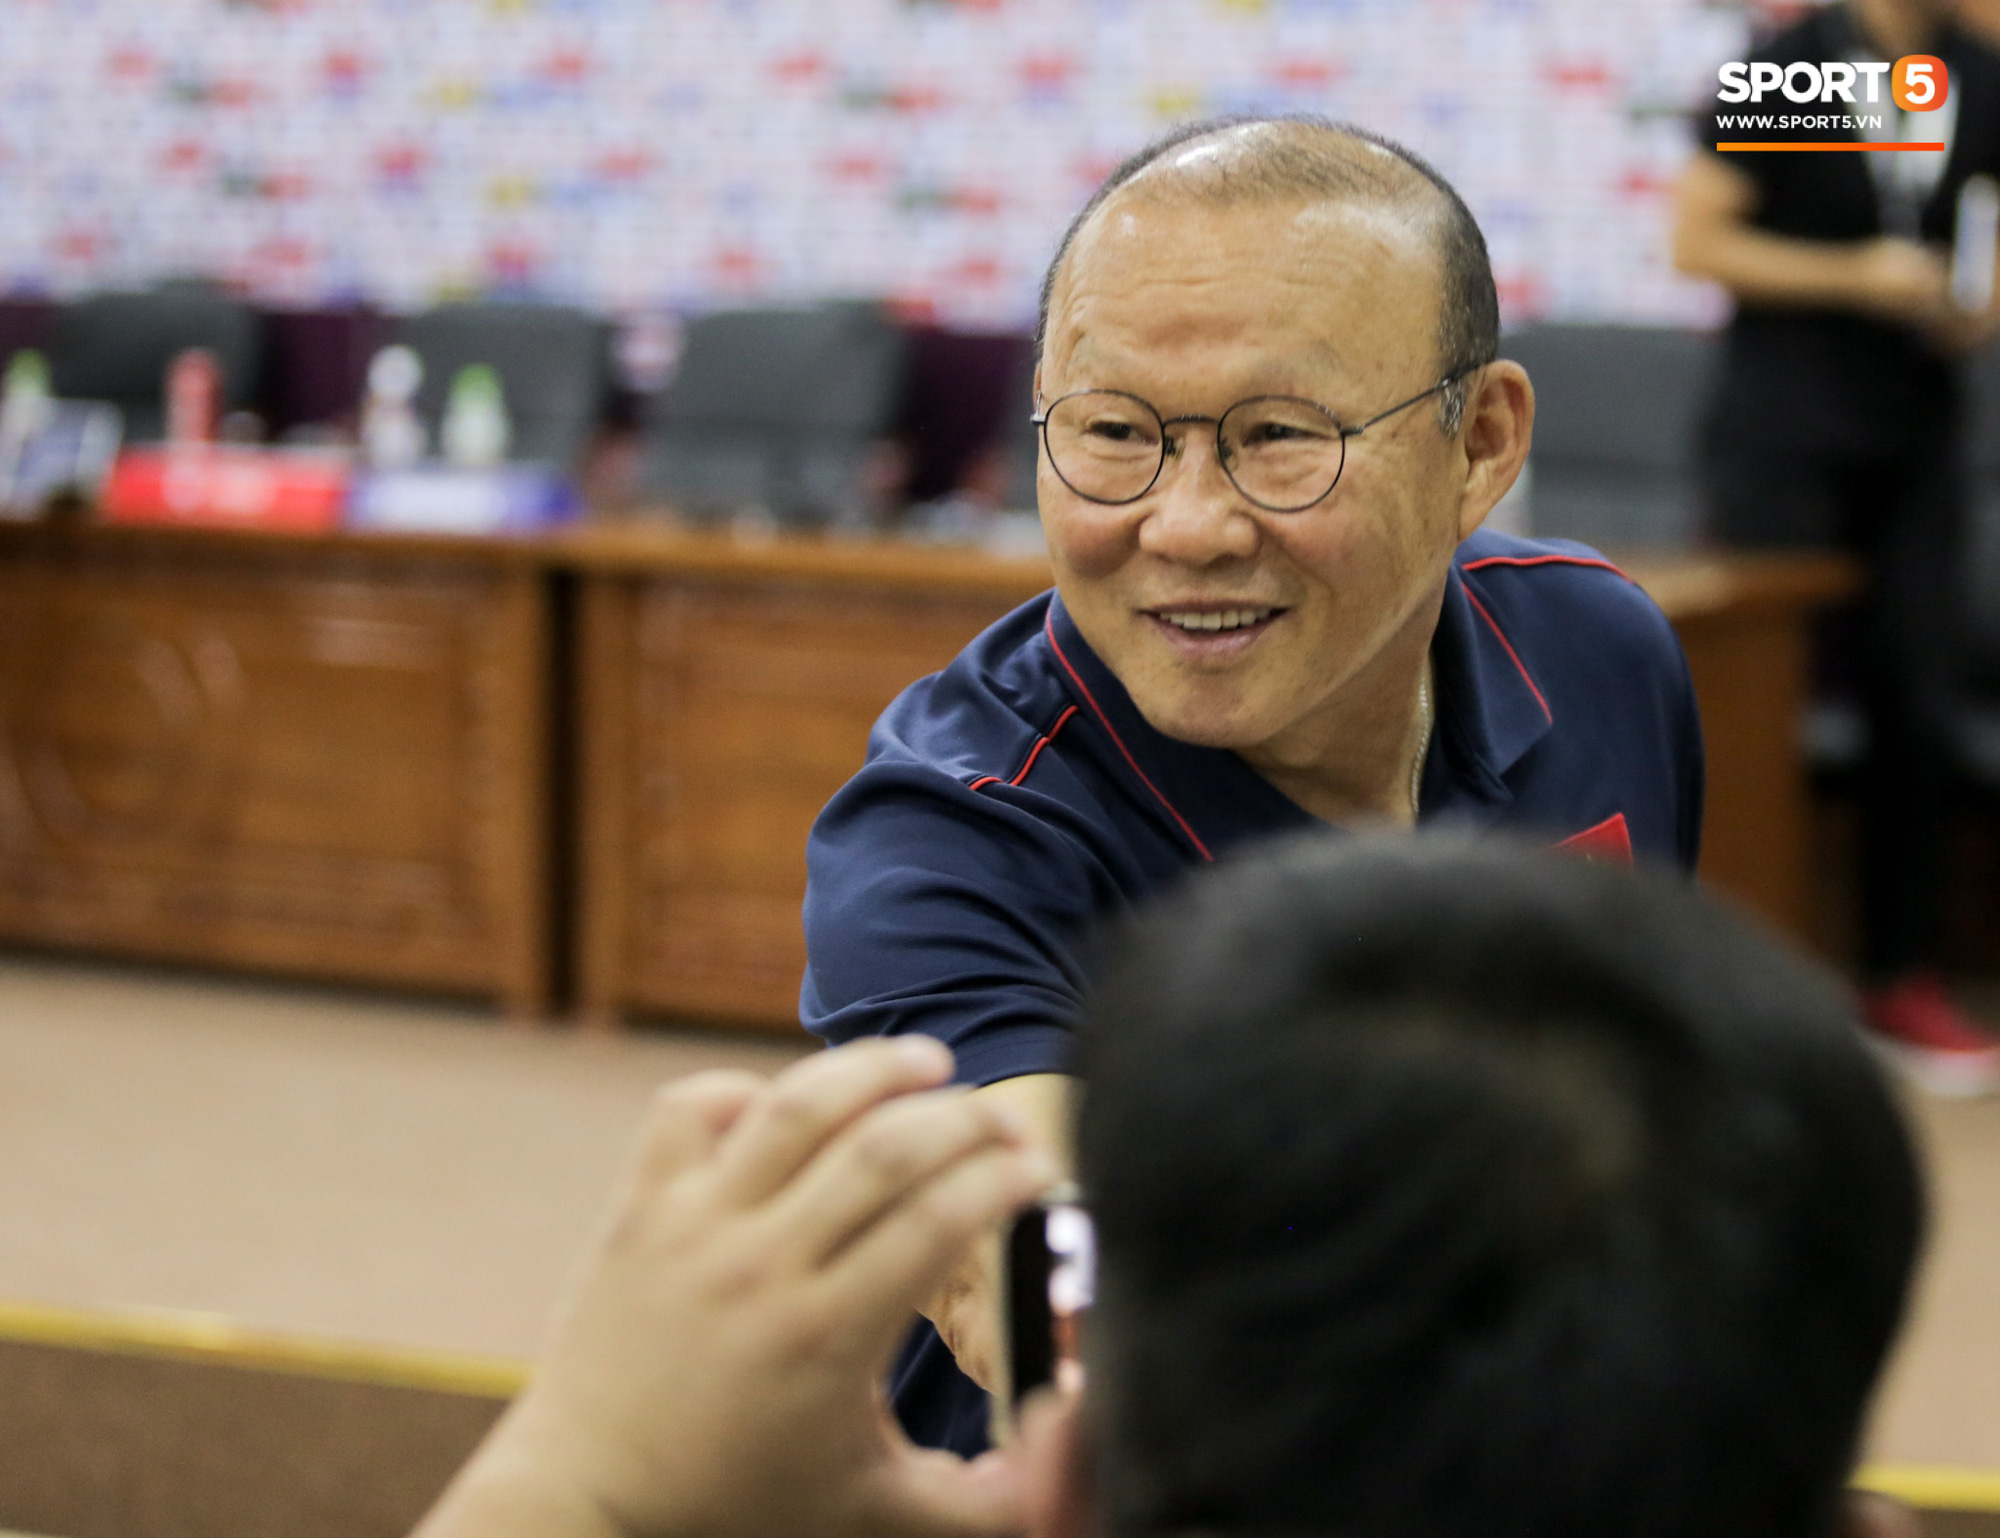 Thầy Park bị nhắc khéo sau khi kỳ phùng địch thủ ở tuyển Thái Lan đồng ý giảm nửa lương vì Covid-19 - Ảnh 1.